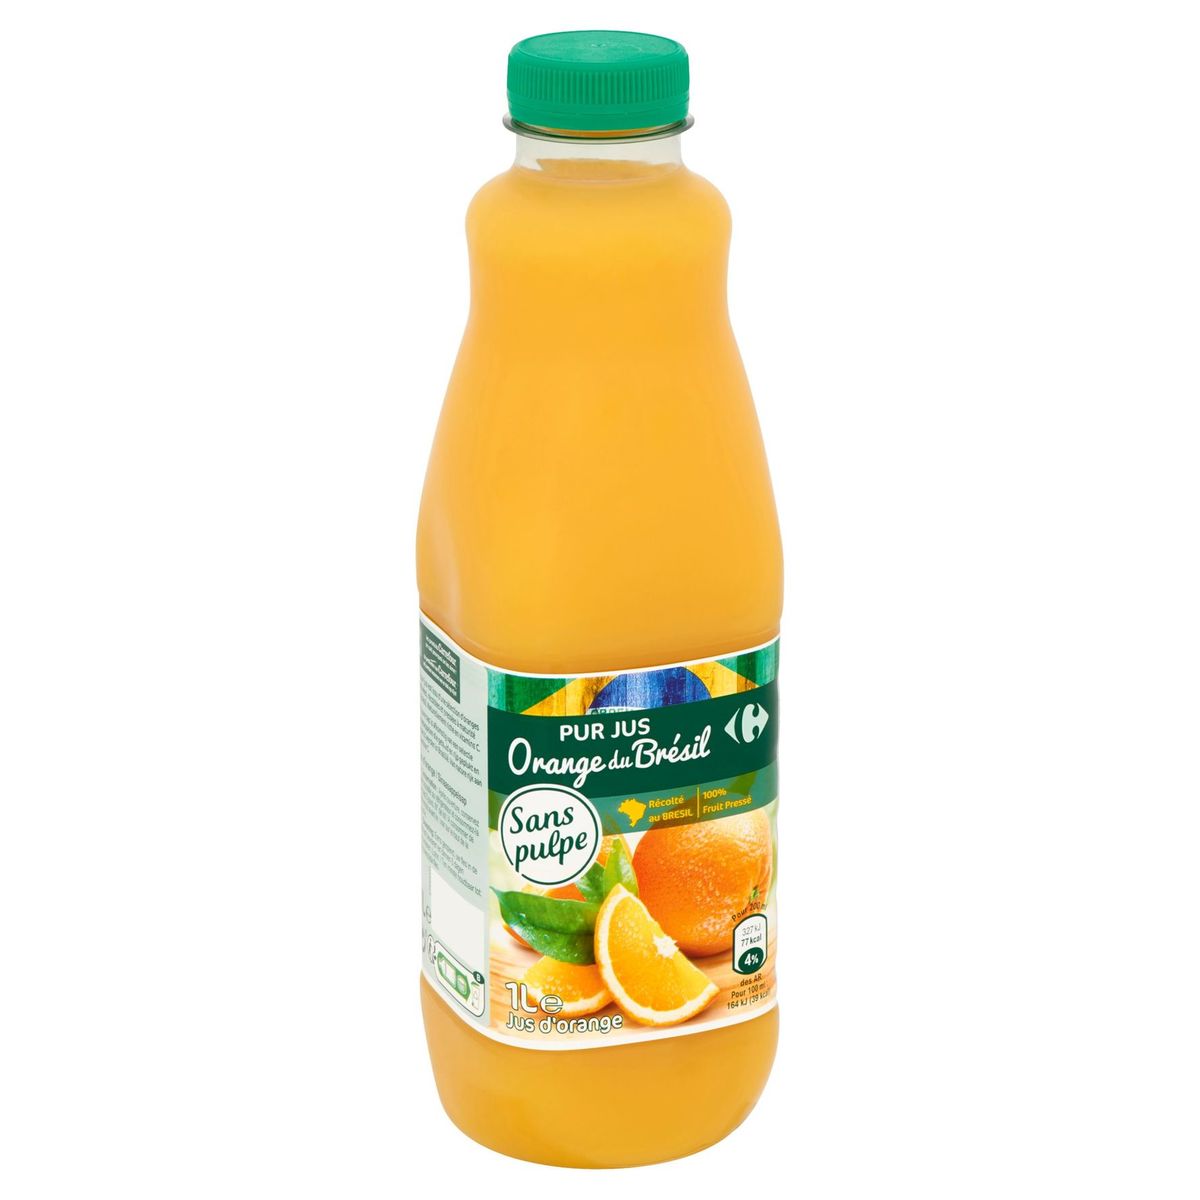 Carrefour Puur Sap Sinaasappel uit Brazilië 1 L